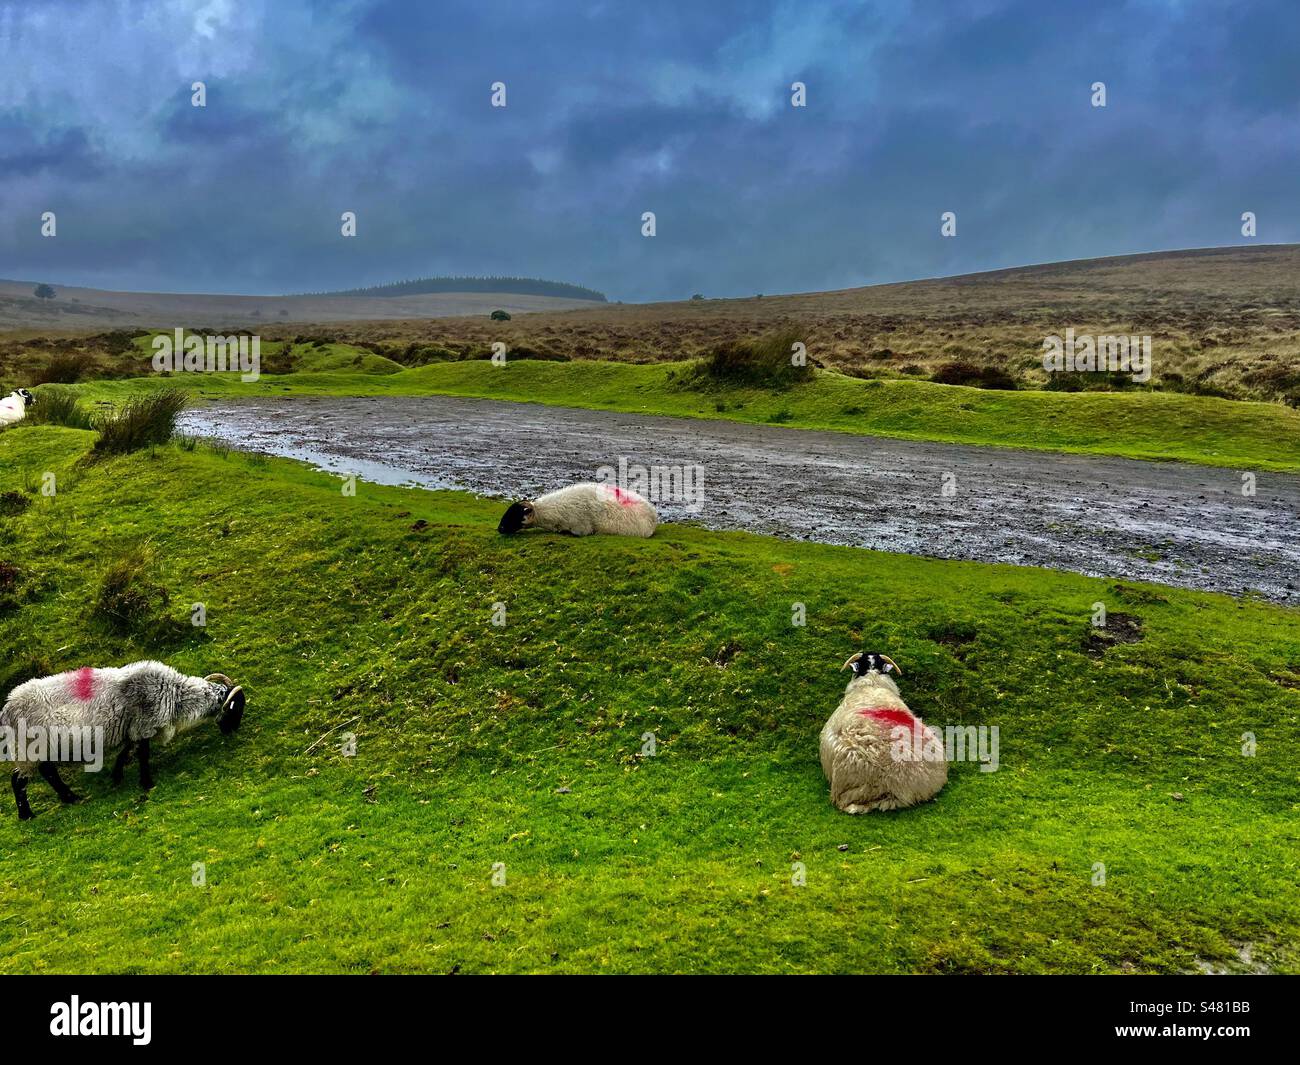 Le pecore che pascolano sedute sedute addossate nuvolose nuvole cielo grigio bestiame che guarda fuori dal finestrino dell'auto nel parco nazionale di Dartmoor piante naturali piante erbose campagna in Inghilterra Foto Stock